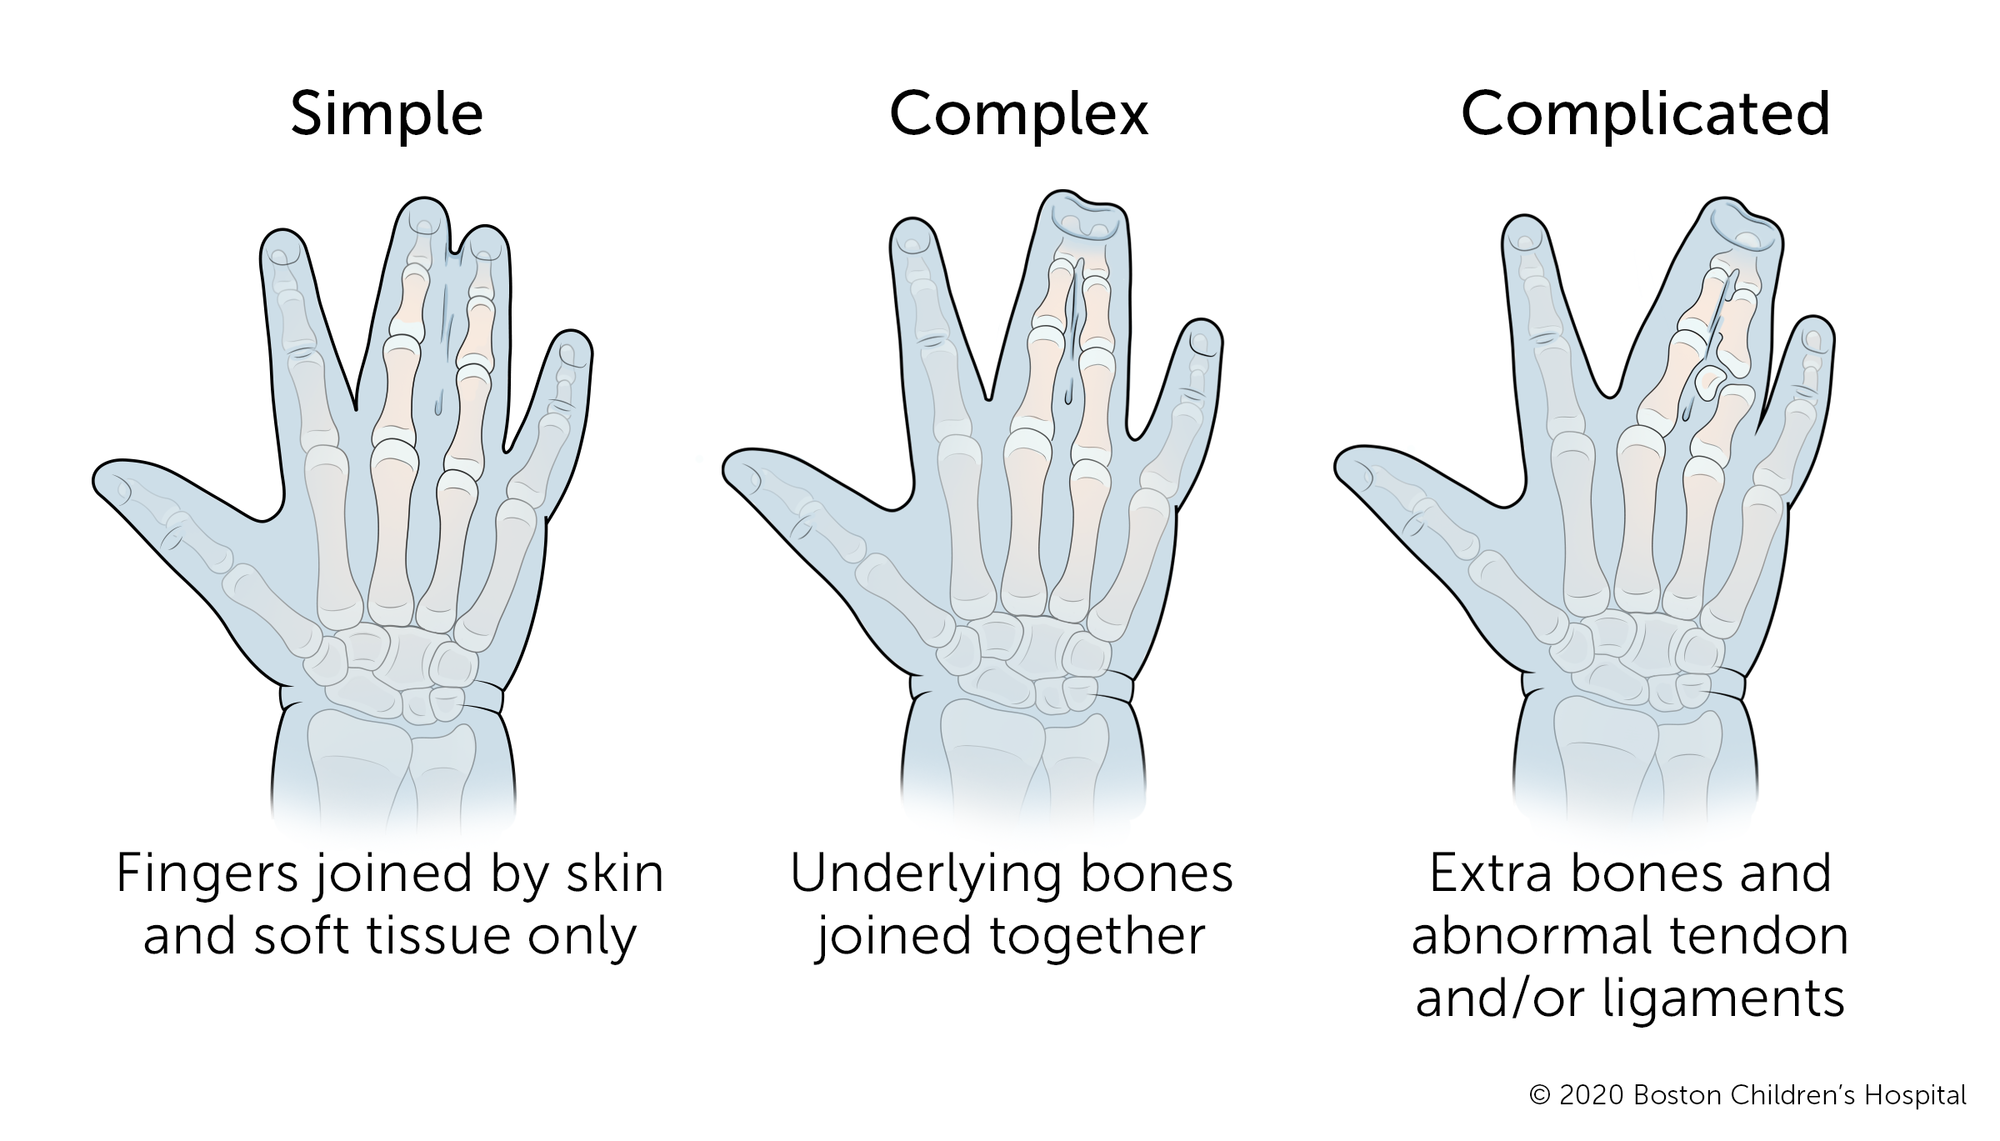 单纯并指指指间只有皮肤和软组织连接。复杂并指指下面的骨头也连在一起。复杂并指指有多余的骨骼和异常的肌腱和/或韧带发育。